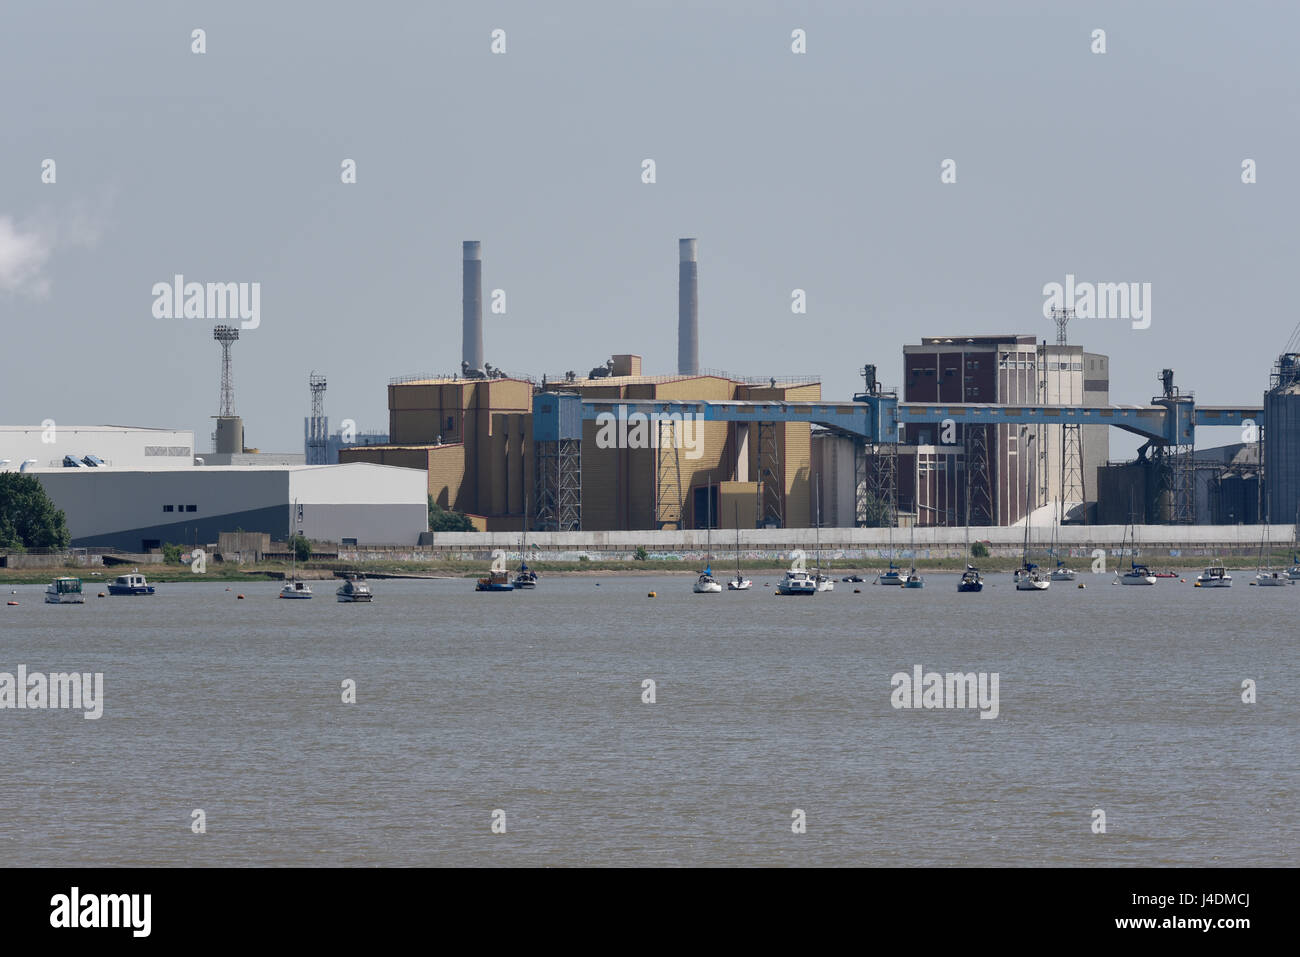 Thames Grain Elevators Grain Terminal in Tilbury Docks, an der Themse in Essex, mit Speichersilos Stockfoto